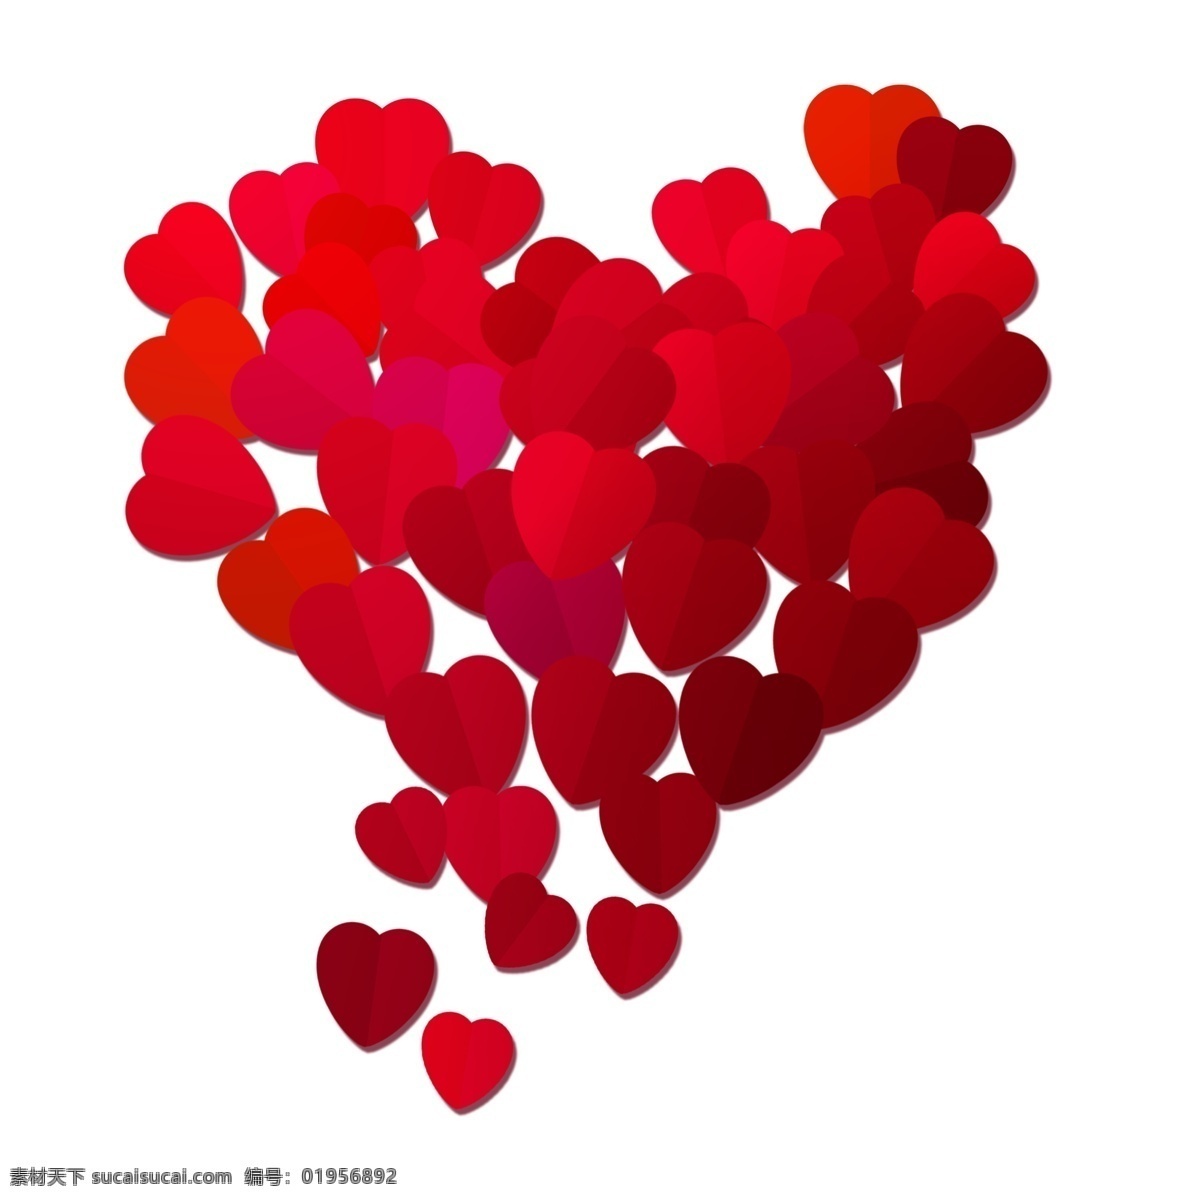 红色 炫彩 气球 插画 红色的气球 爱心气球 卡通插画 气球插画 爱情插画 礼物插画 炫彩的气球